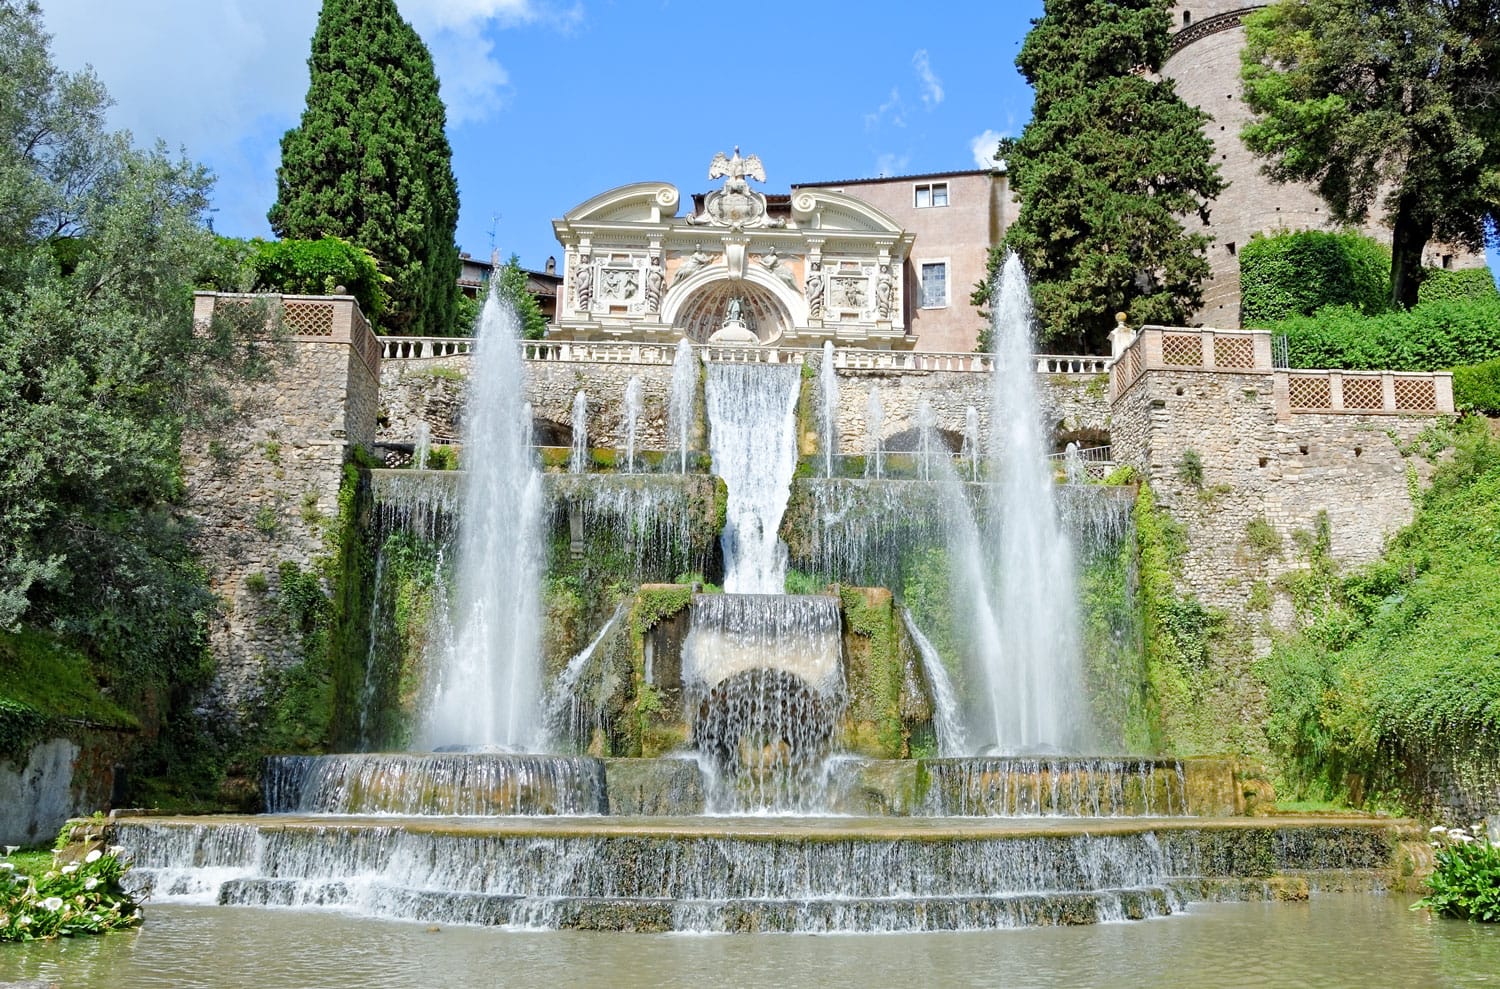 Villa d'Este garden and fountains in Tivoli, Italy